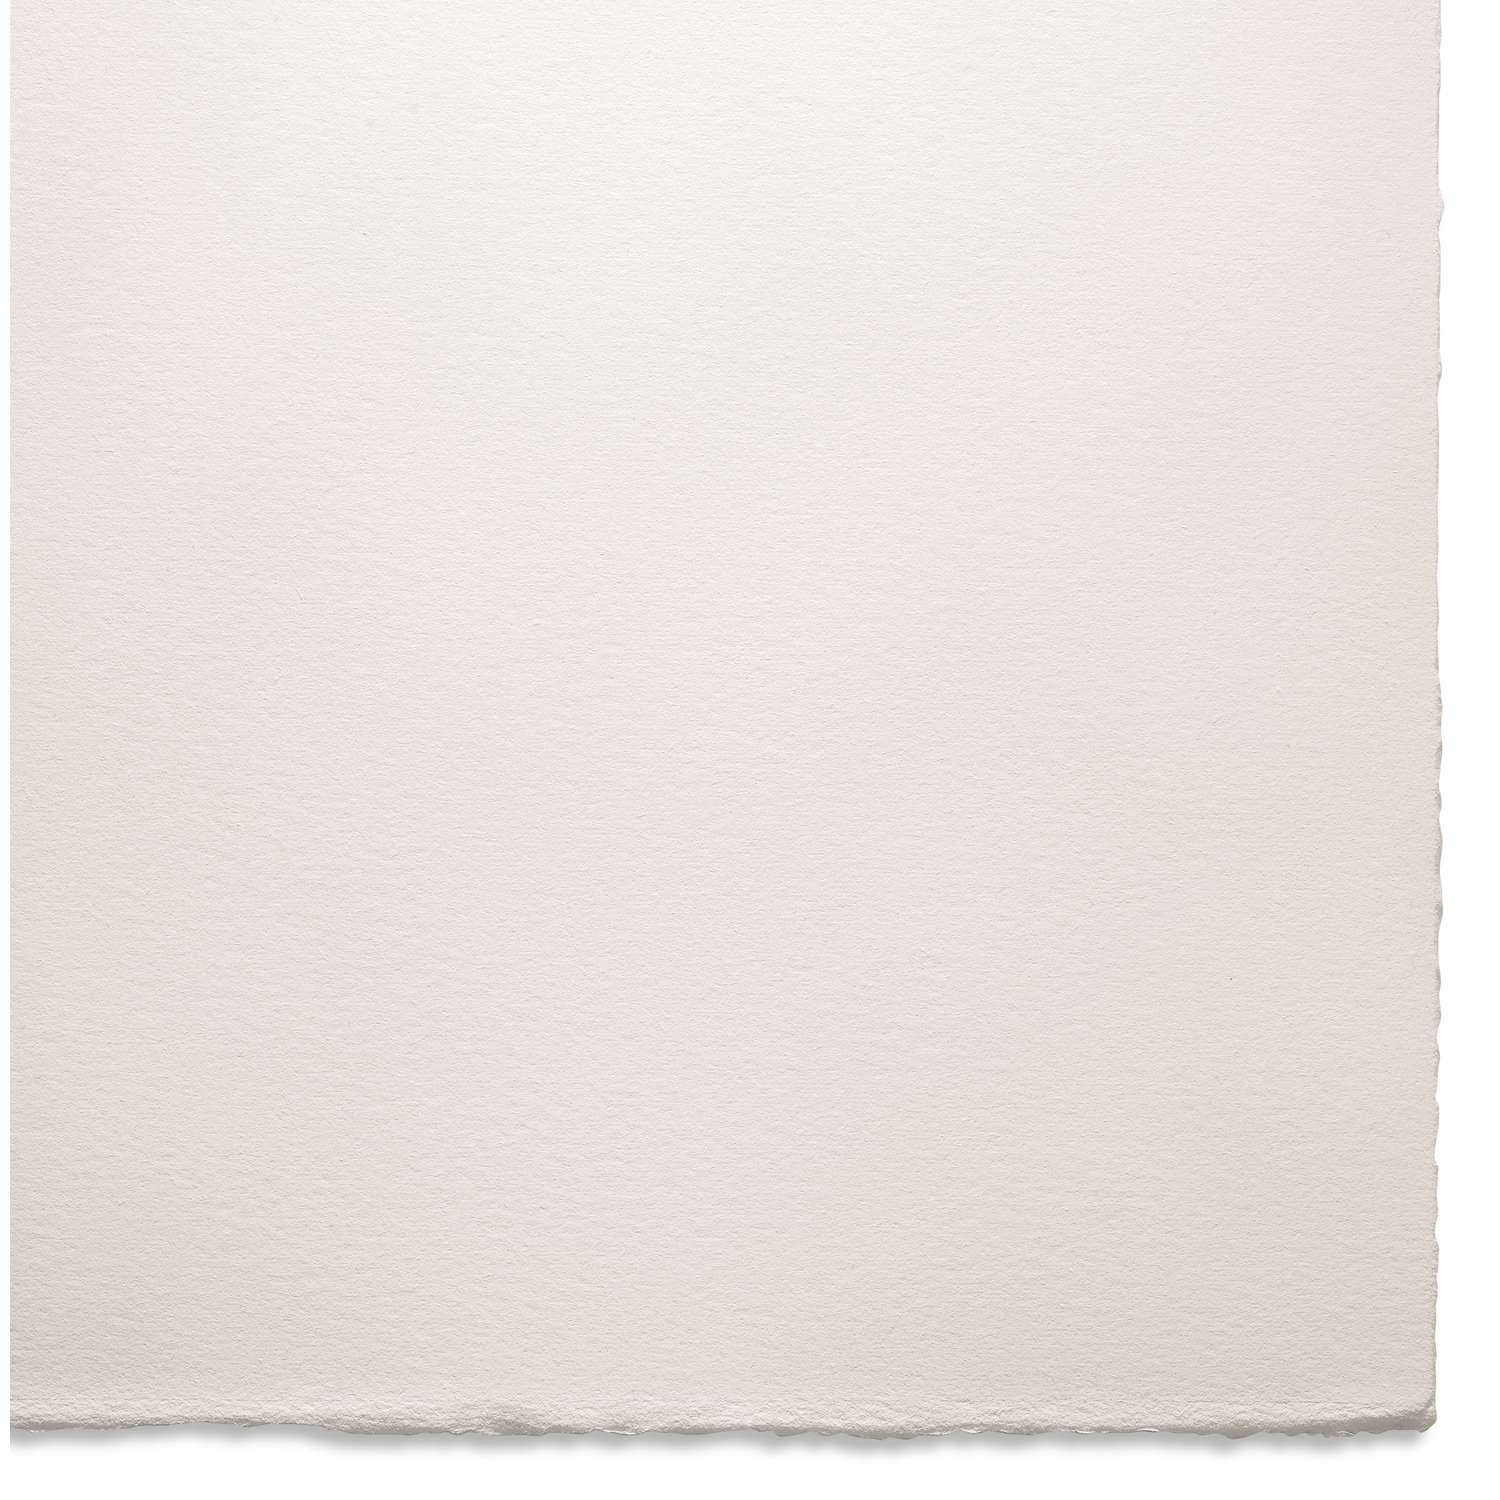 Papier Velin BFK Rives Arches 22 x 30 250gr blanc par